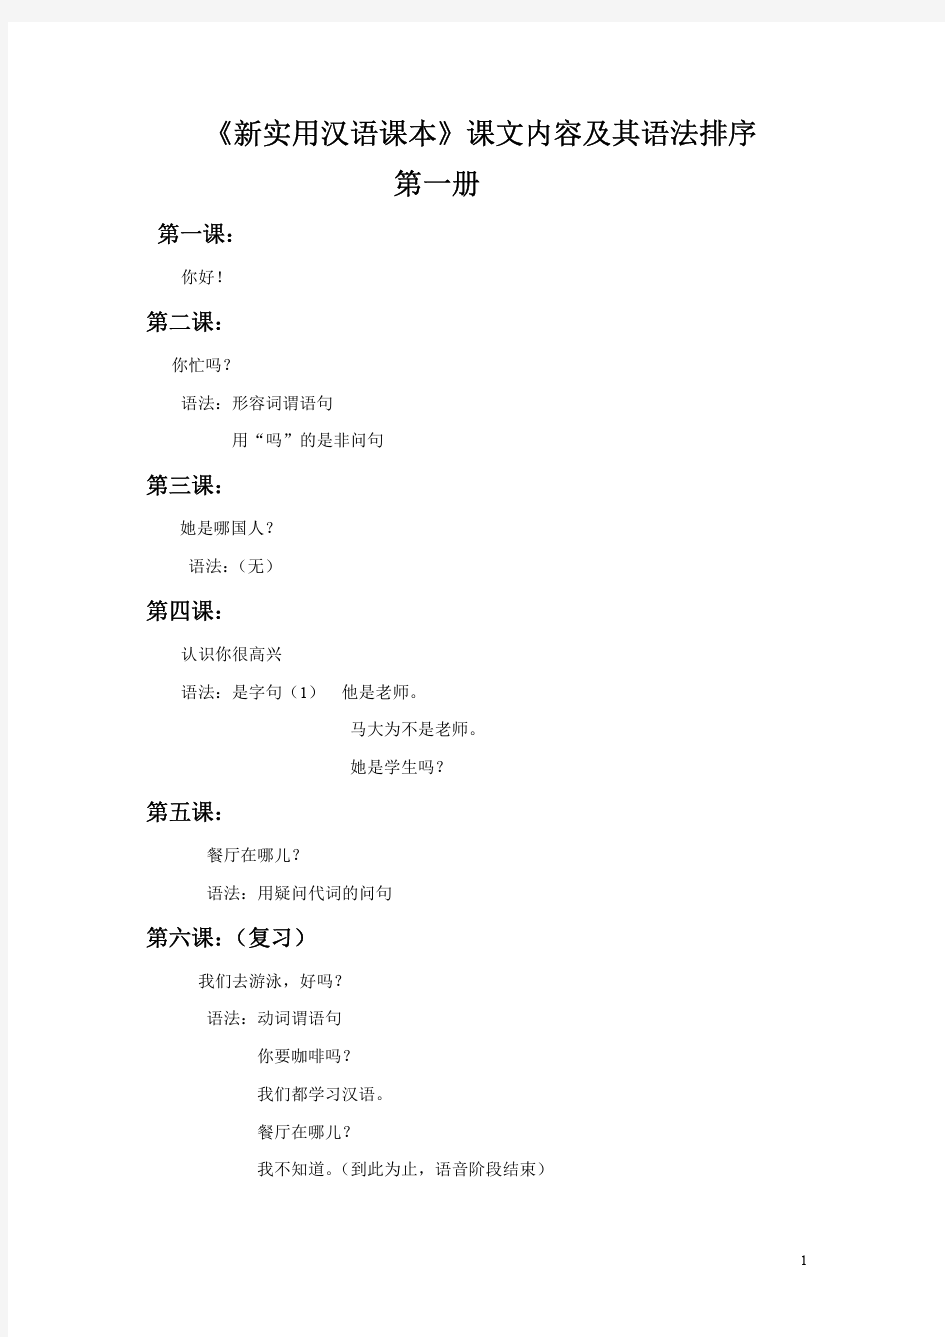 《新实用汉语课本》内容和语法排序 